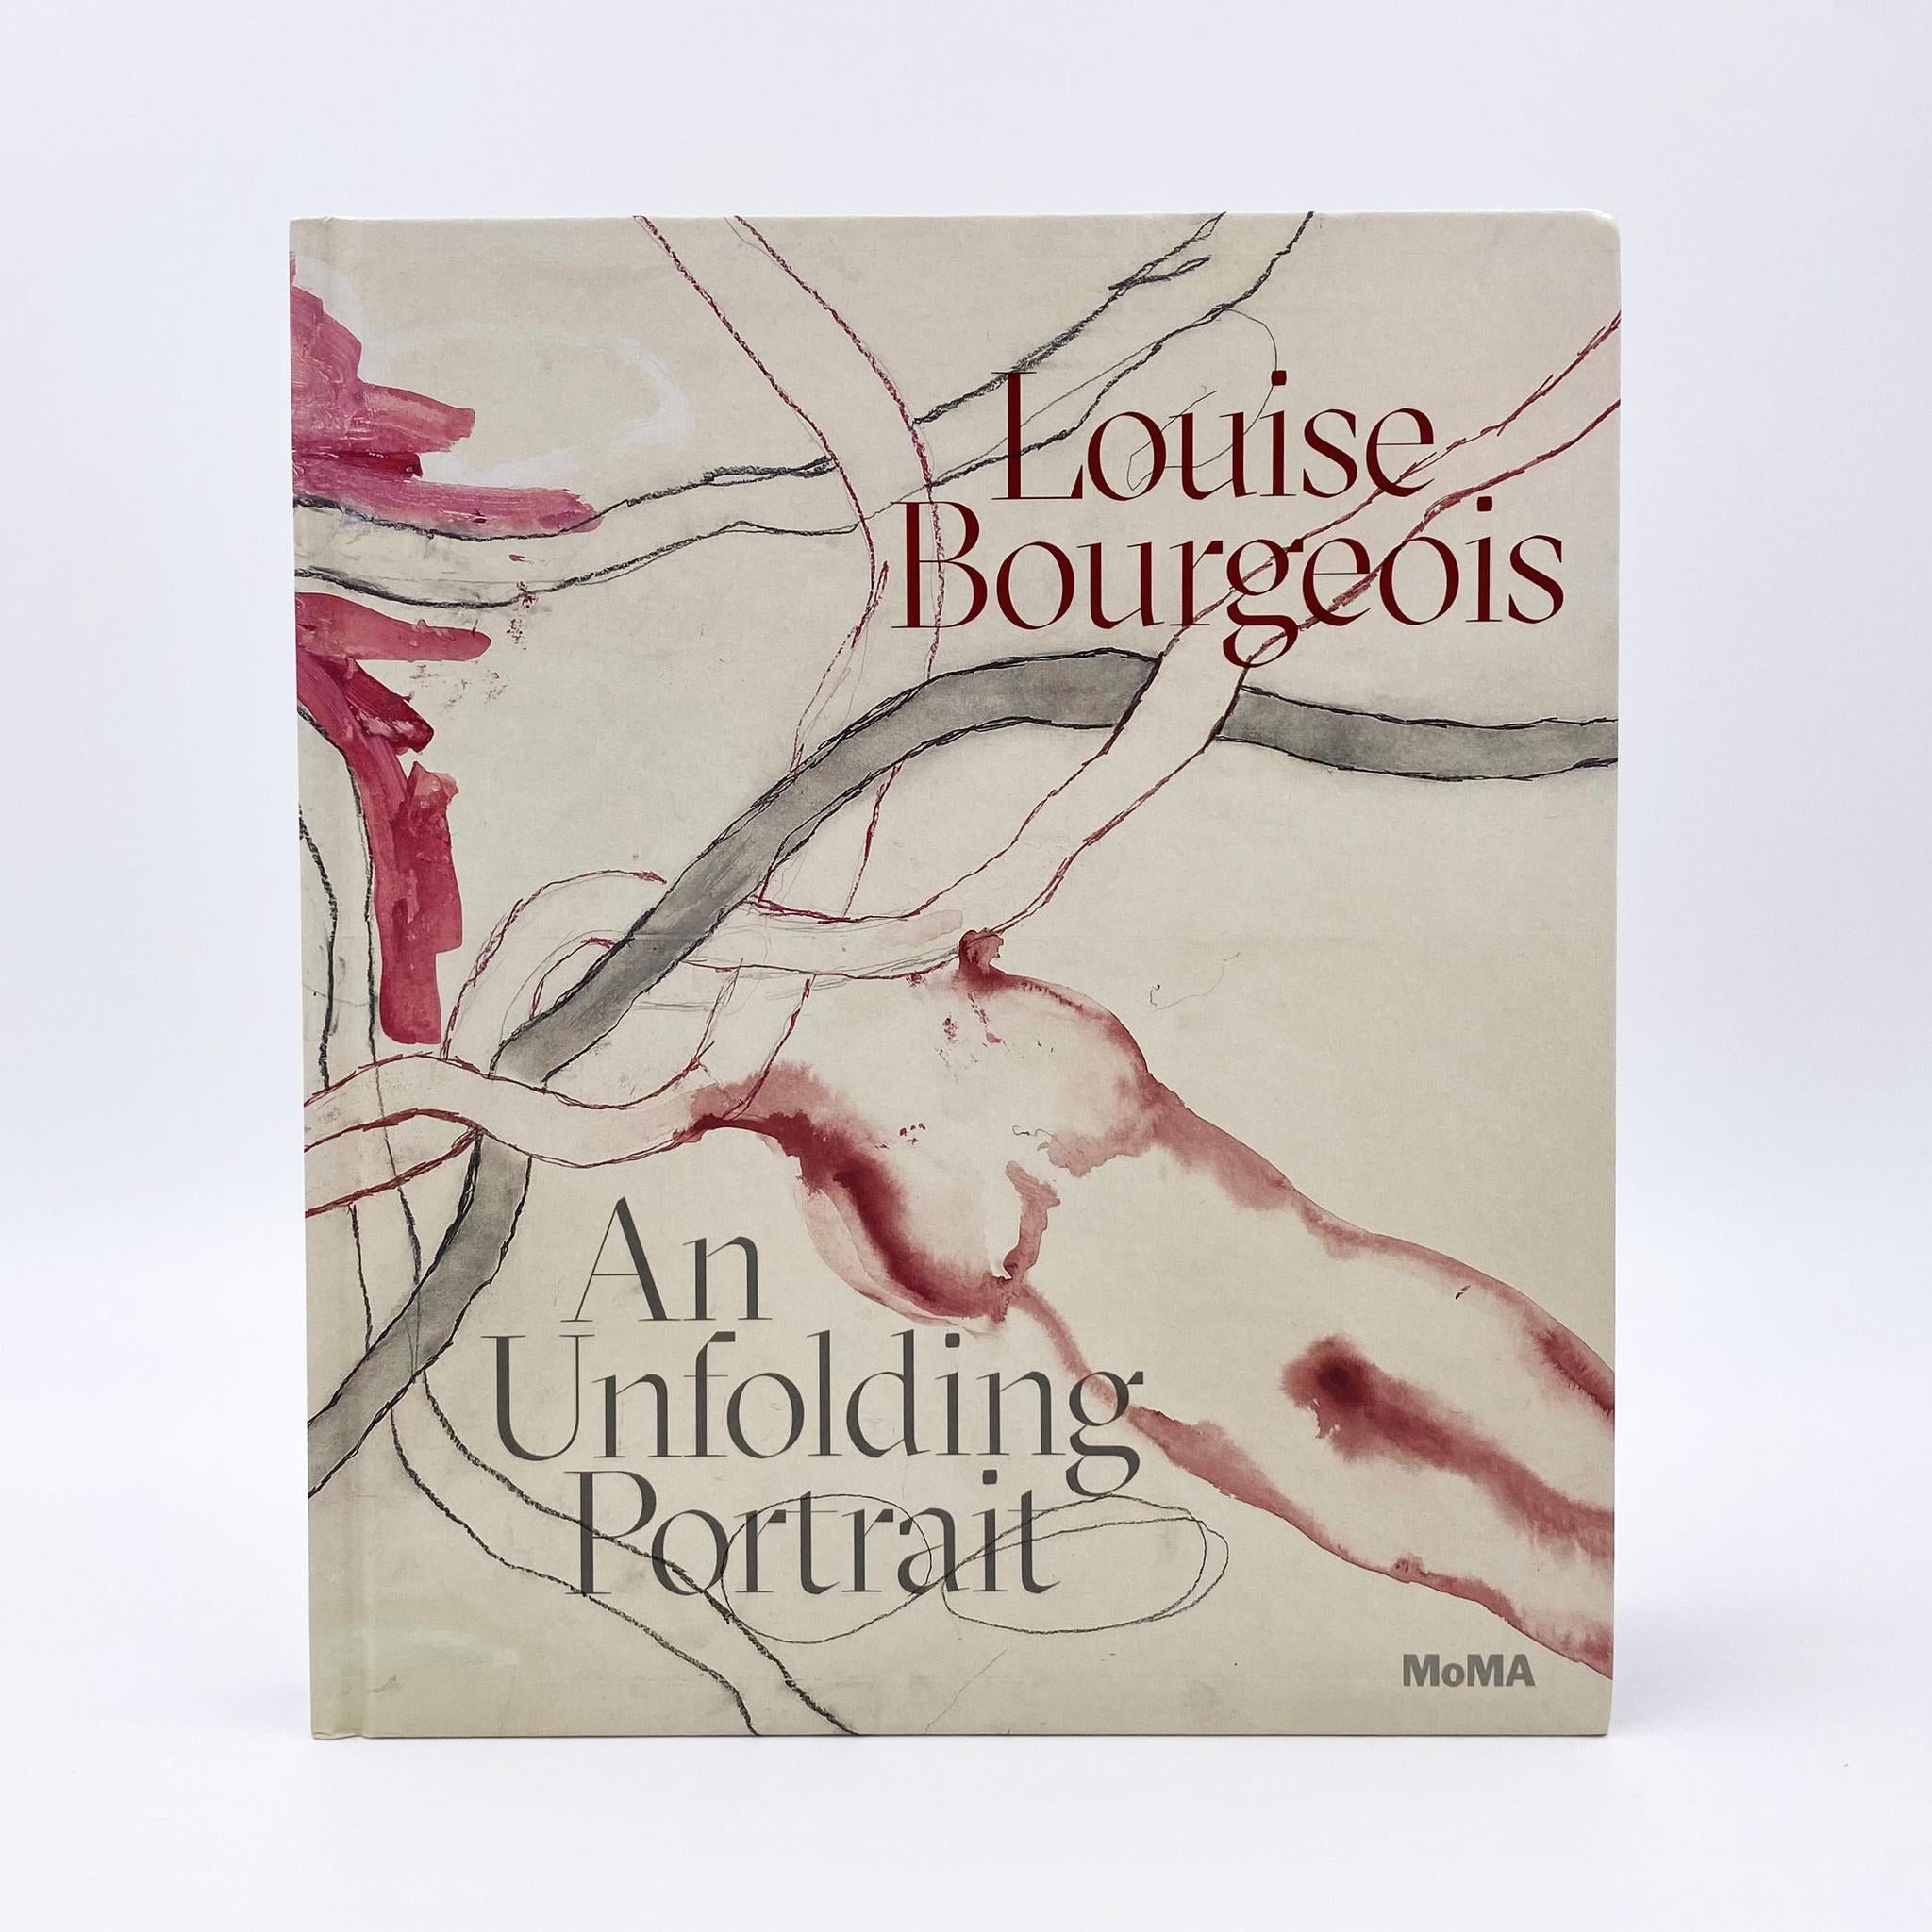 Louise Bourgeois: An Unfolding Portrait